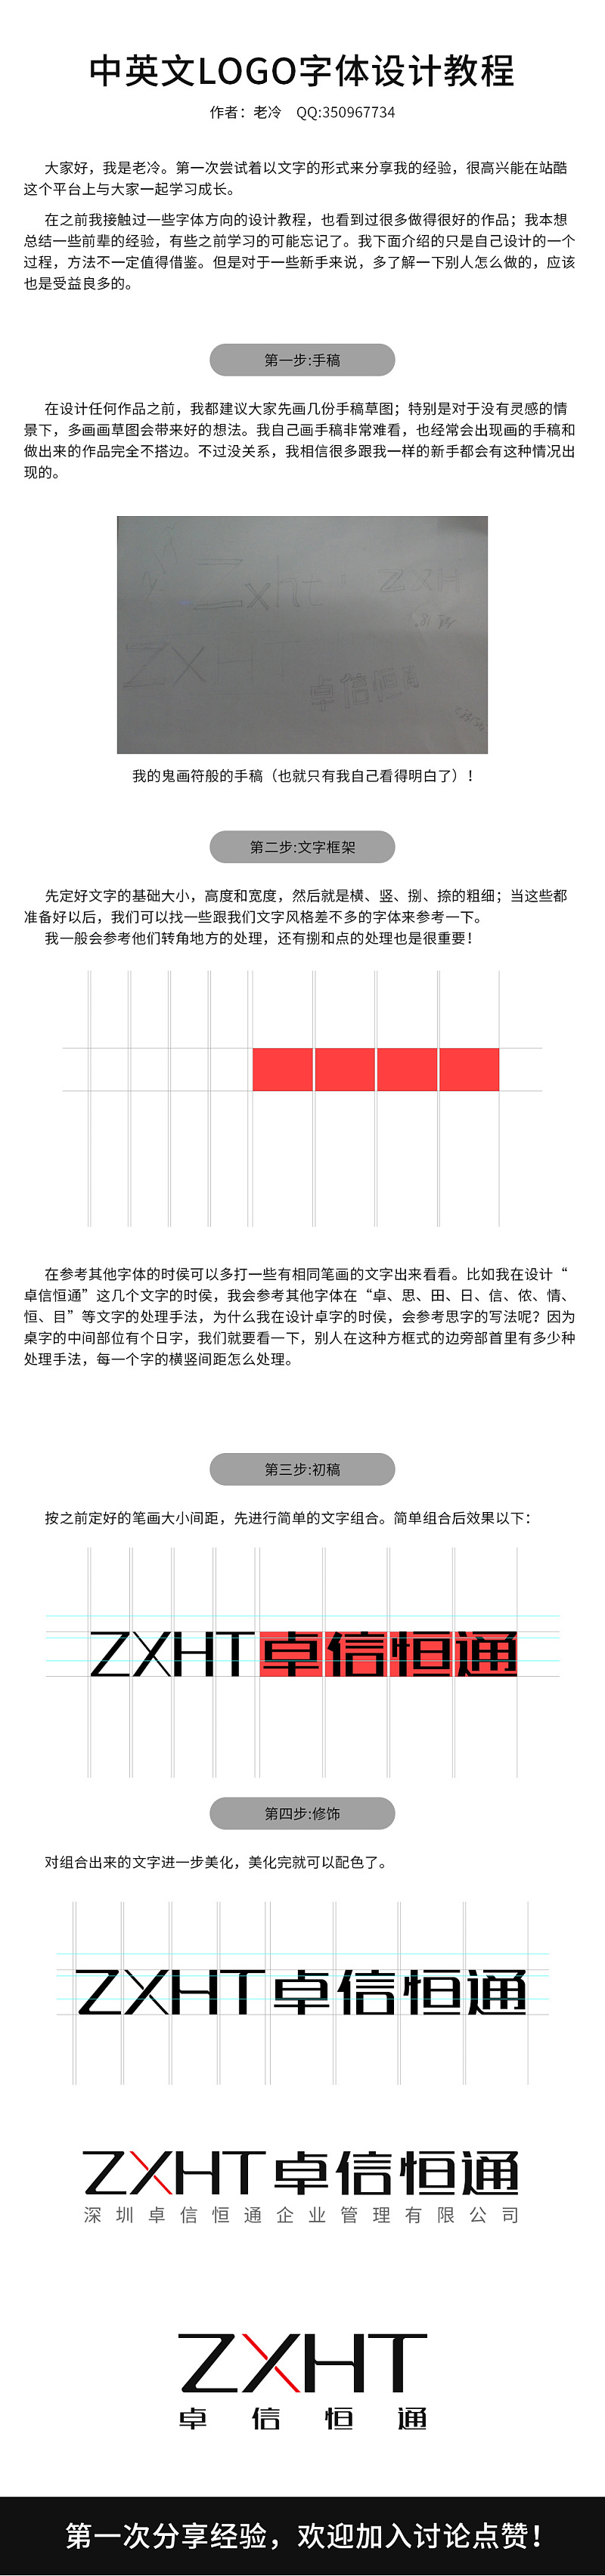 中英文LOGO字体设计教程